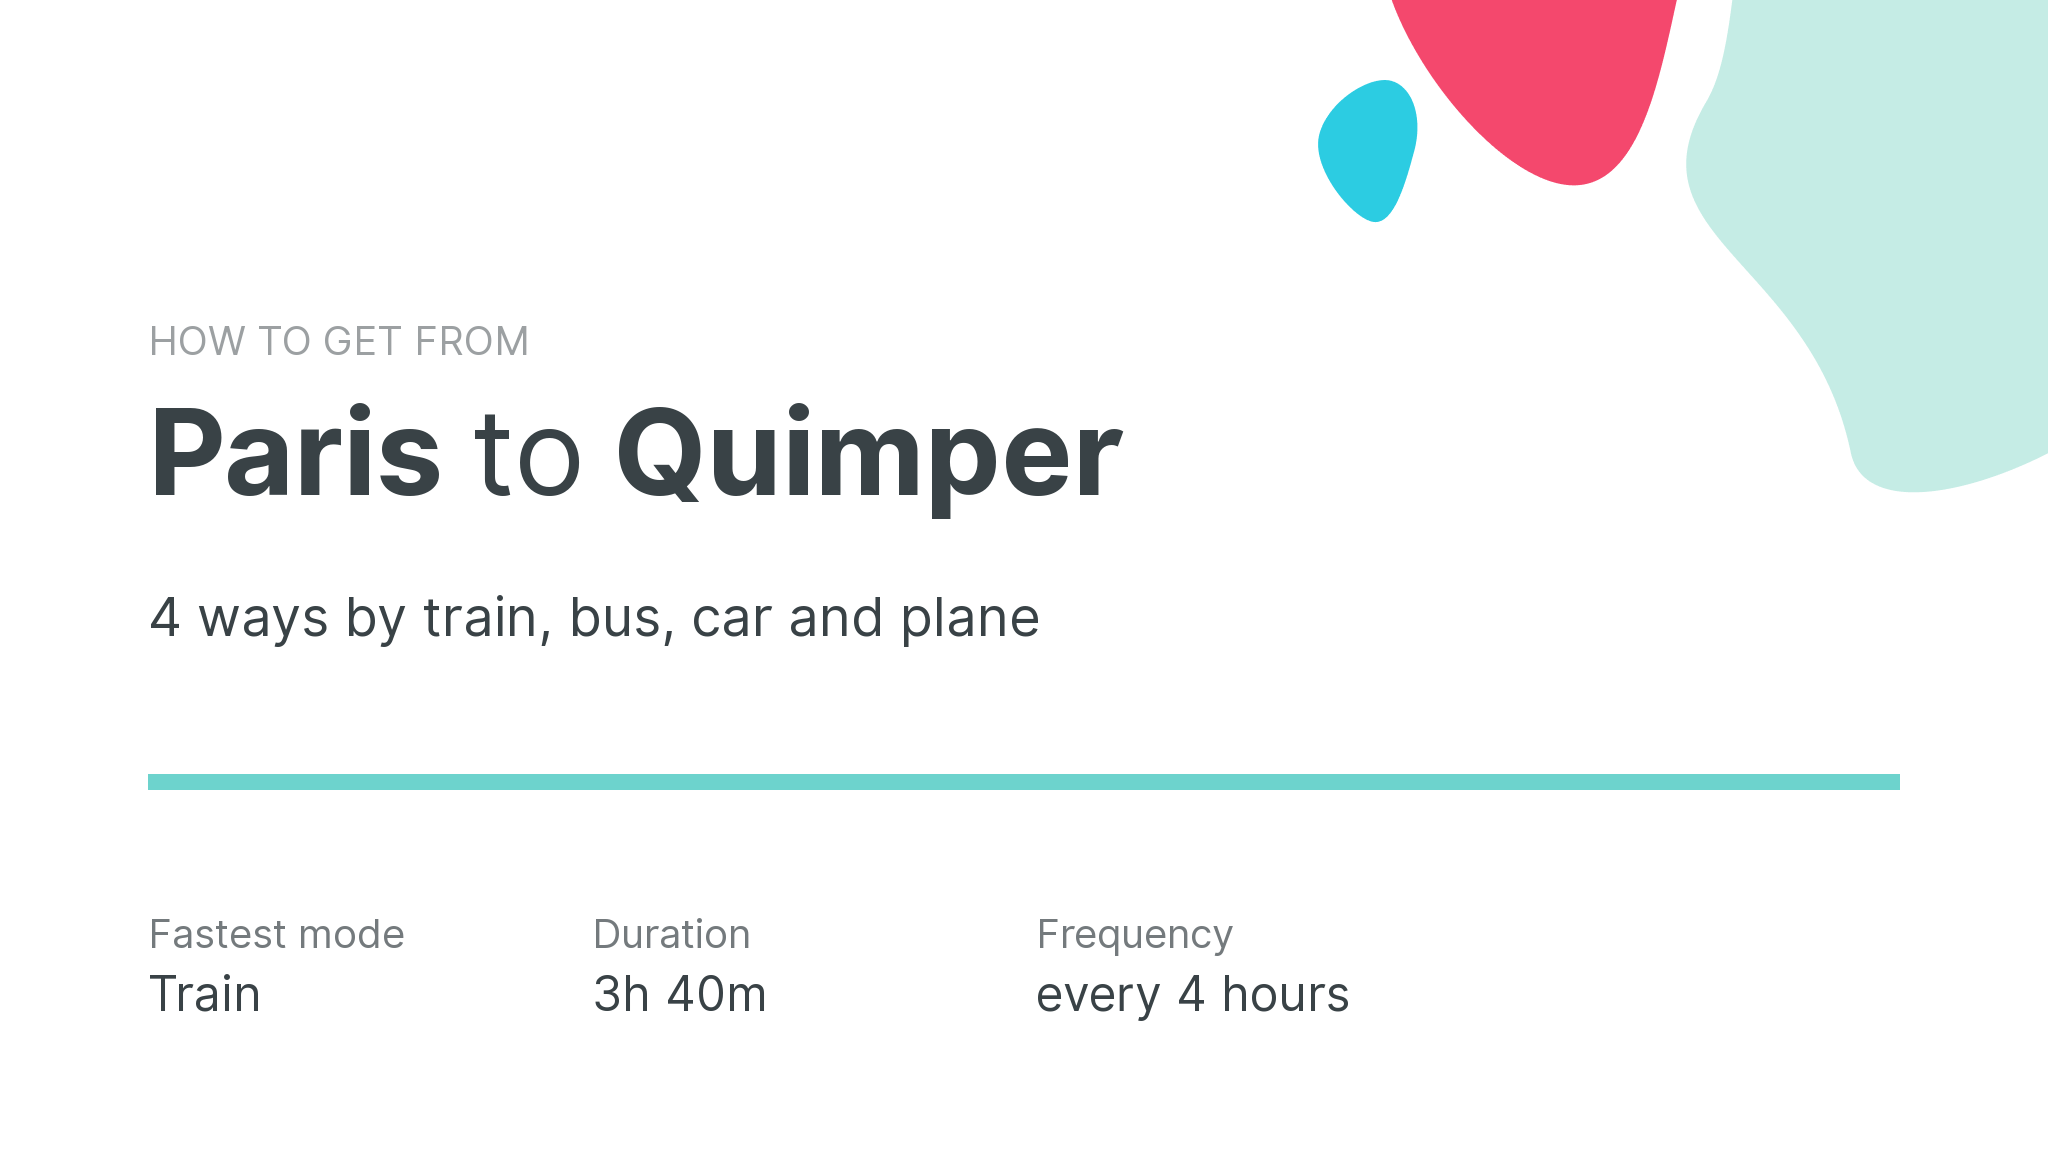 How do I get from Paris to Quimper